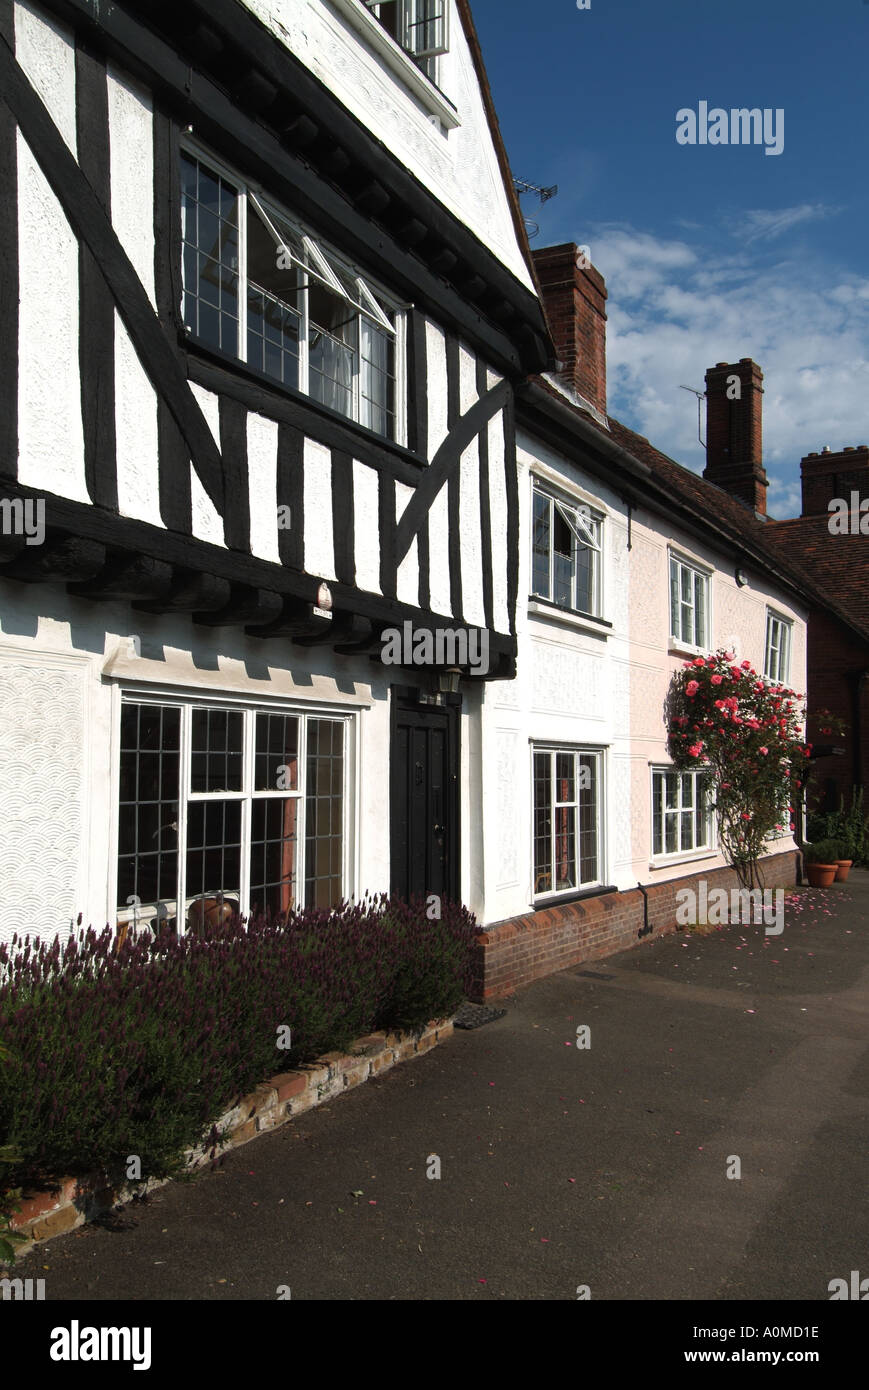 Beaucoup de Hadham village avec noir et blanc demi maison à colombages Et des chalets aux couleurs lavées au-delà de Hertfordshire Angleterre Royaume-Uni Banque D'Images